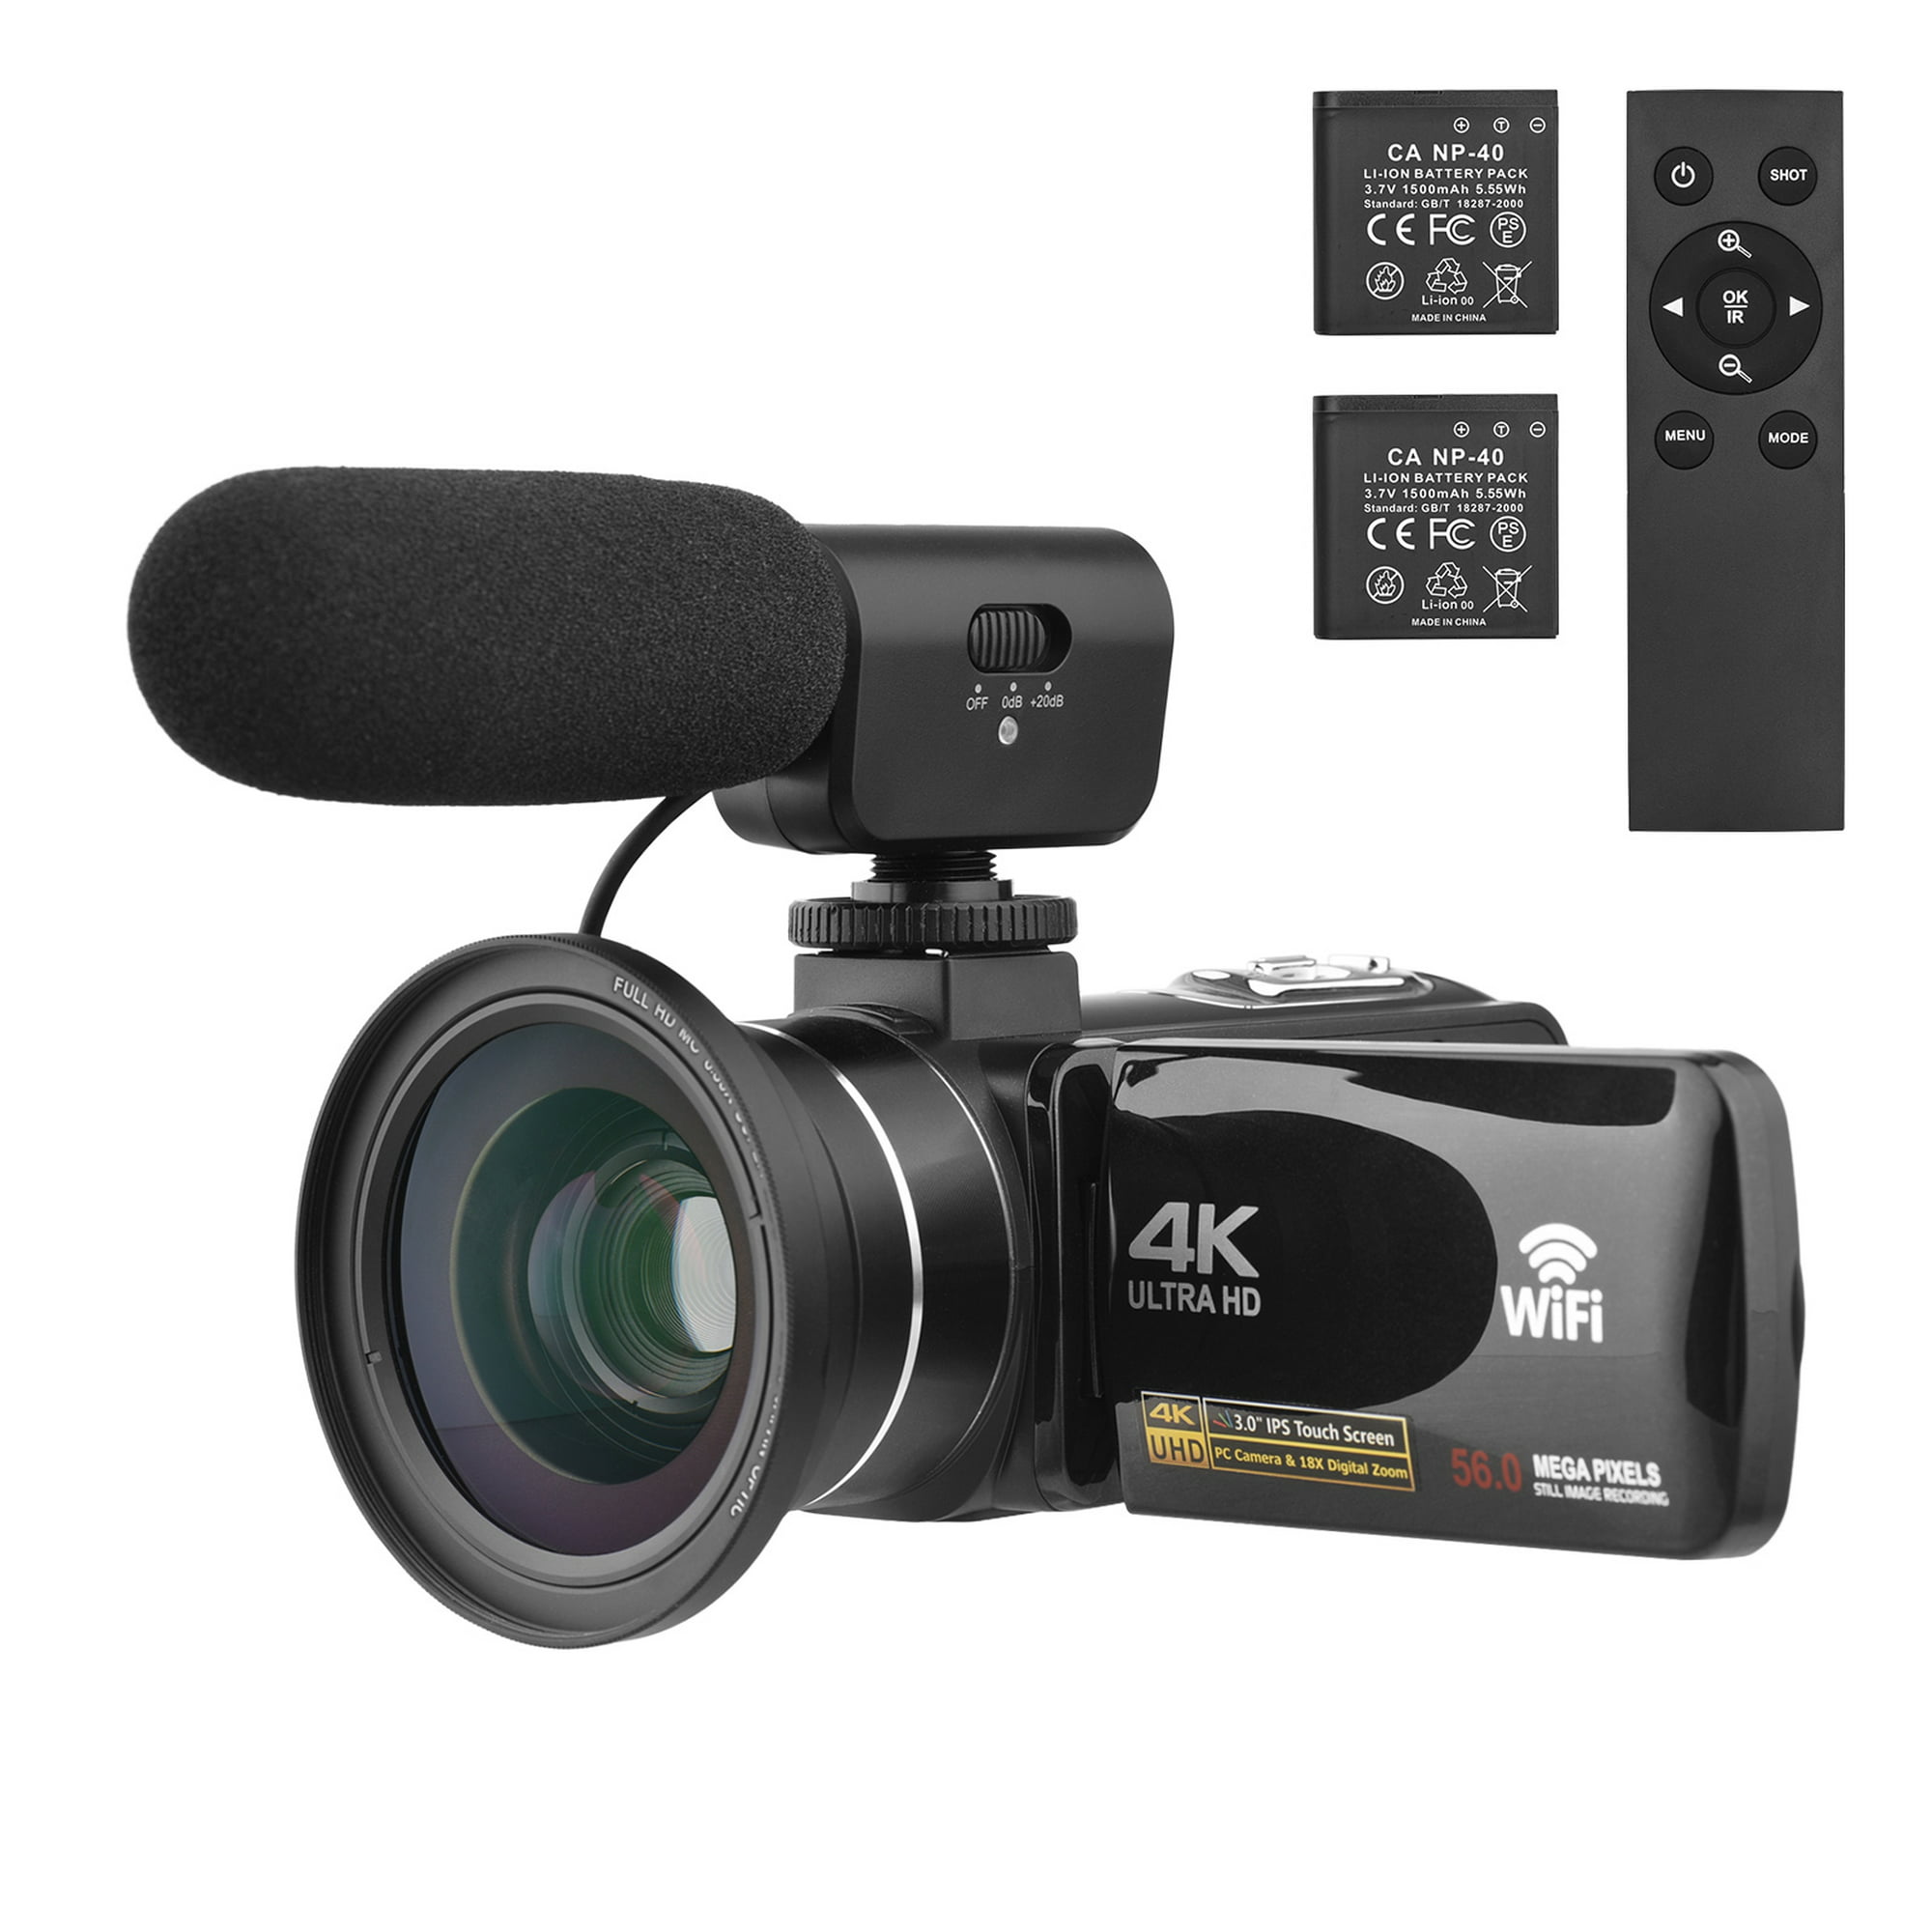 Cámara de video 4K Videocámara WiFi Grabadora DV 56MP 18X Zoom Pantalla táctil IPS d Abanopi Videocámara | Walmart en línea